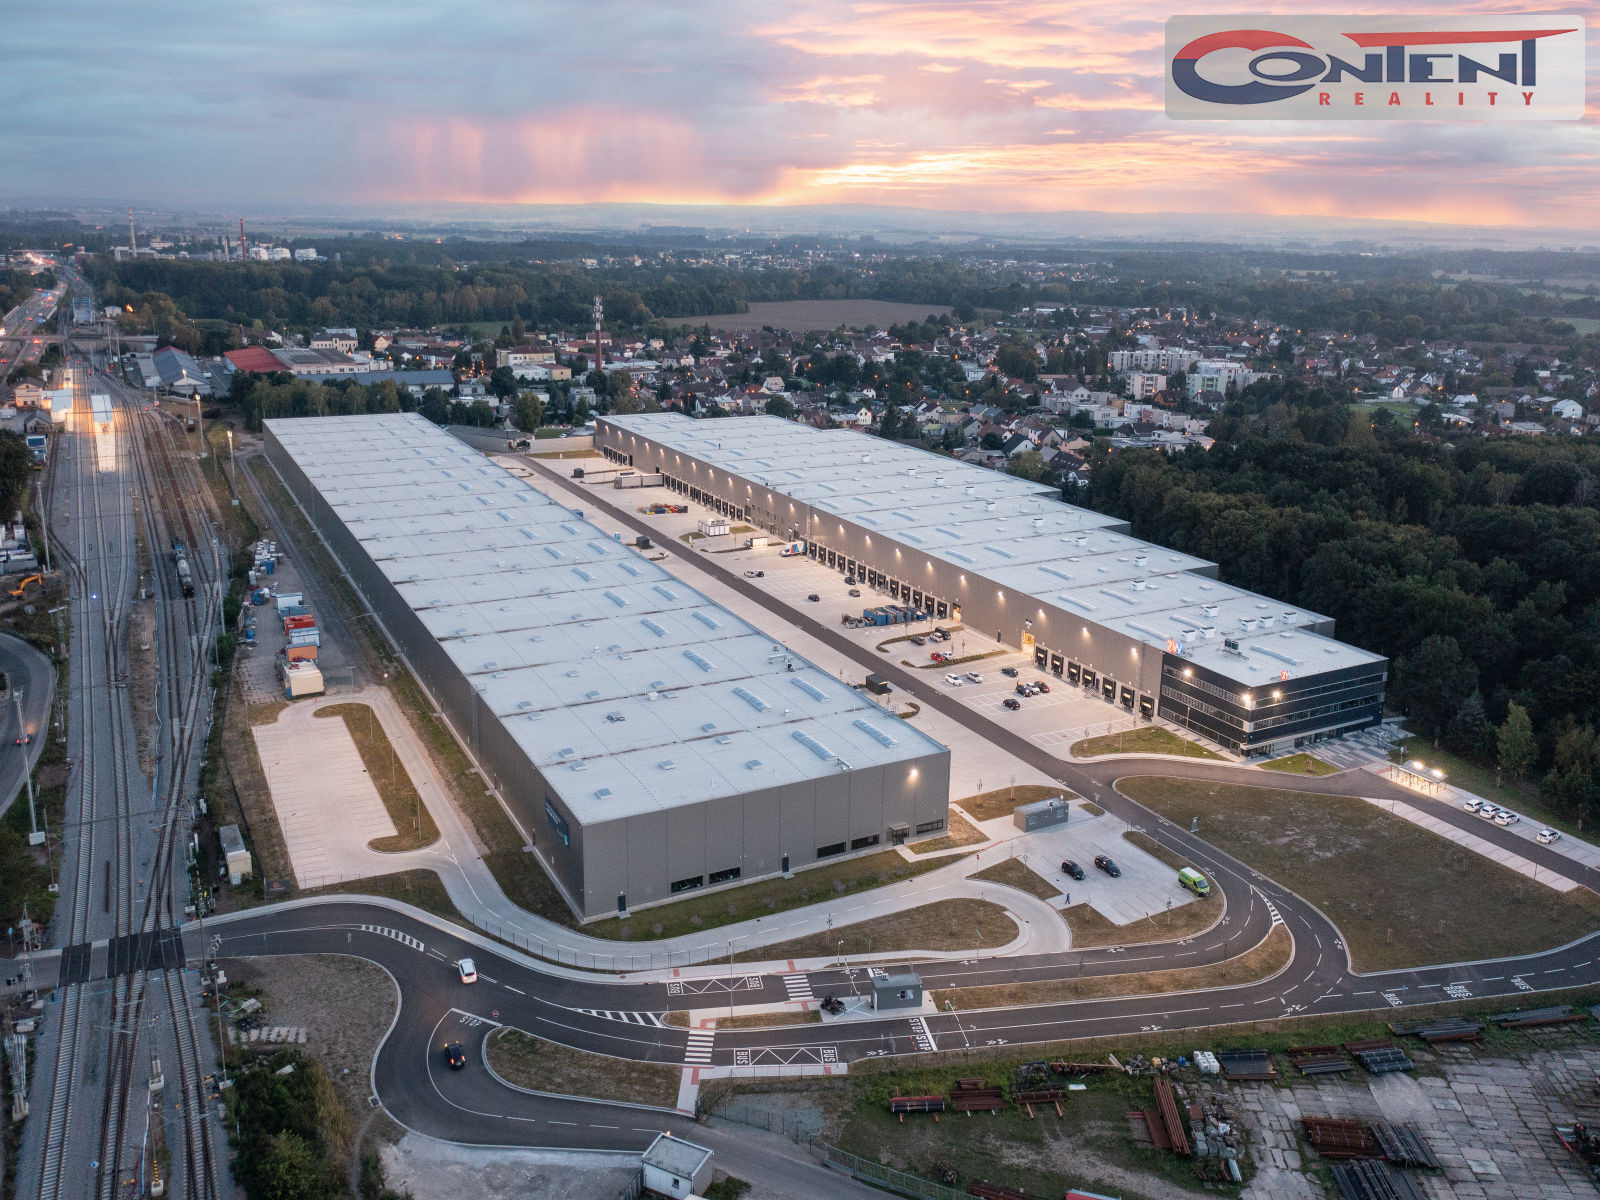 Pronájem skladu / výrobních prostor 12.000 m², Pardubice